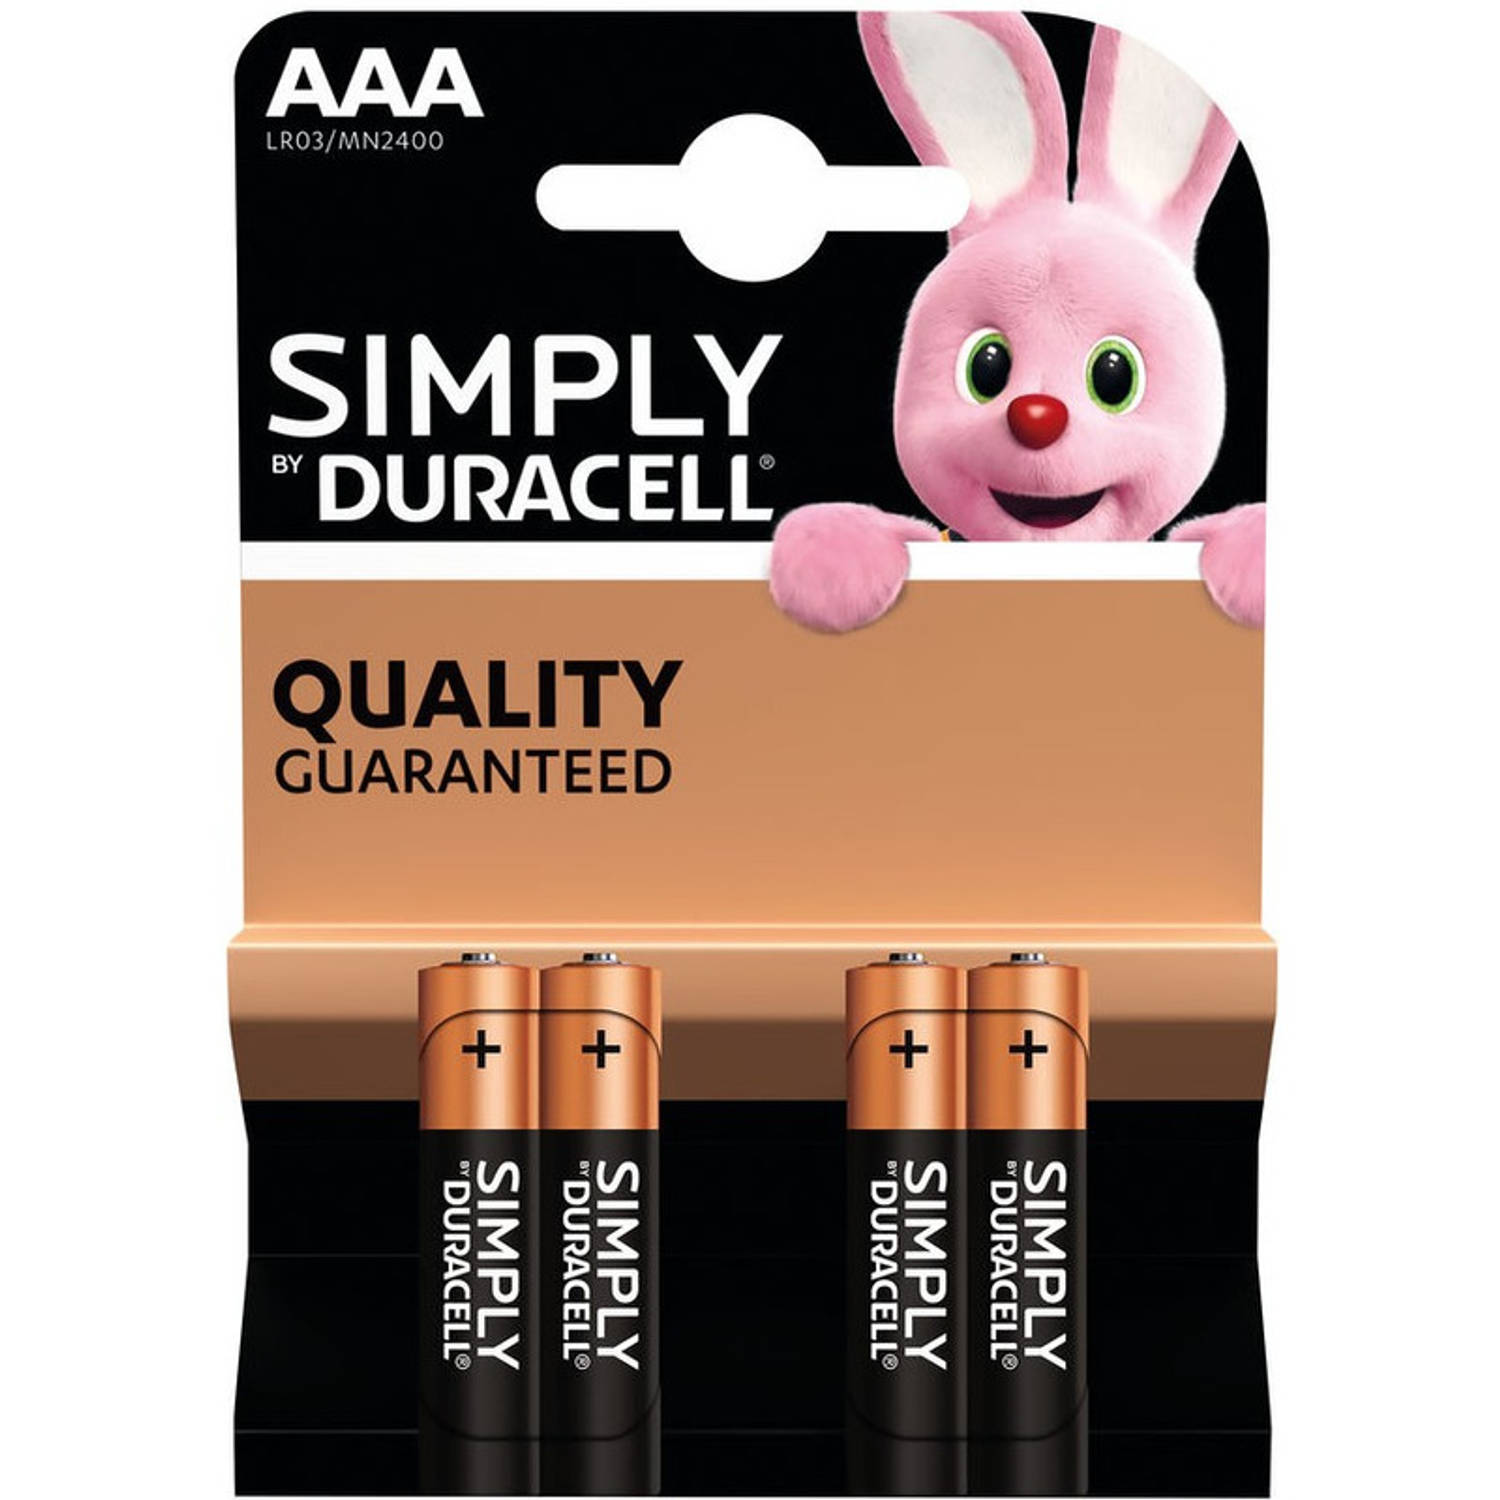 Set van 12x Duracell AAA Simply alkaline batterijen LR03 MN2400 1.5 V - Minipenlites AAA batterijen